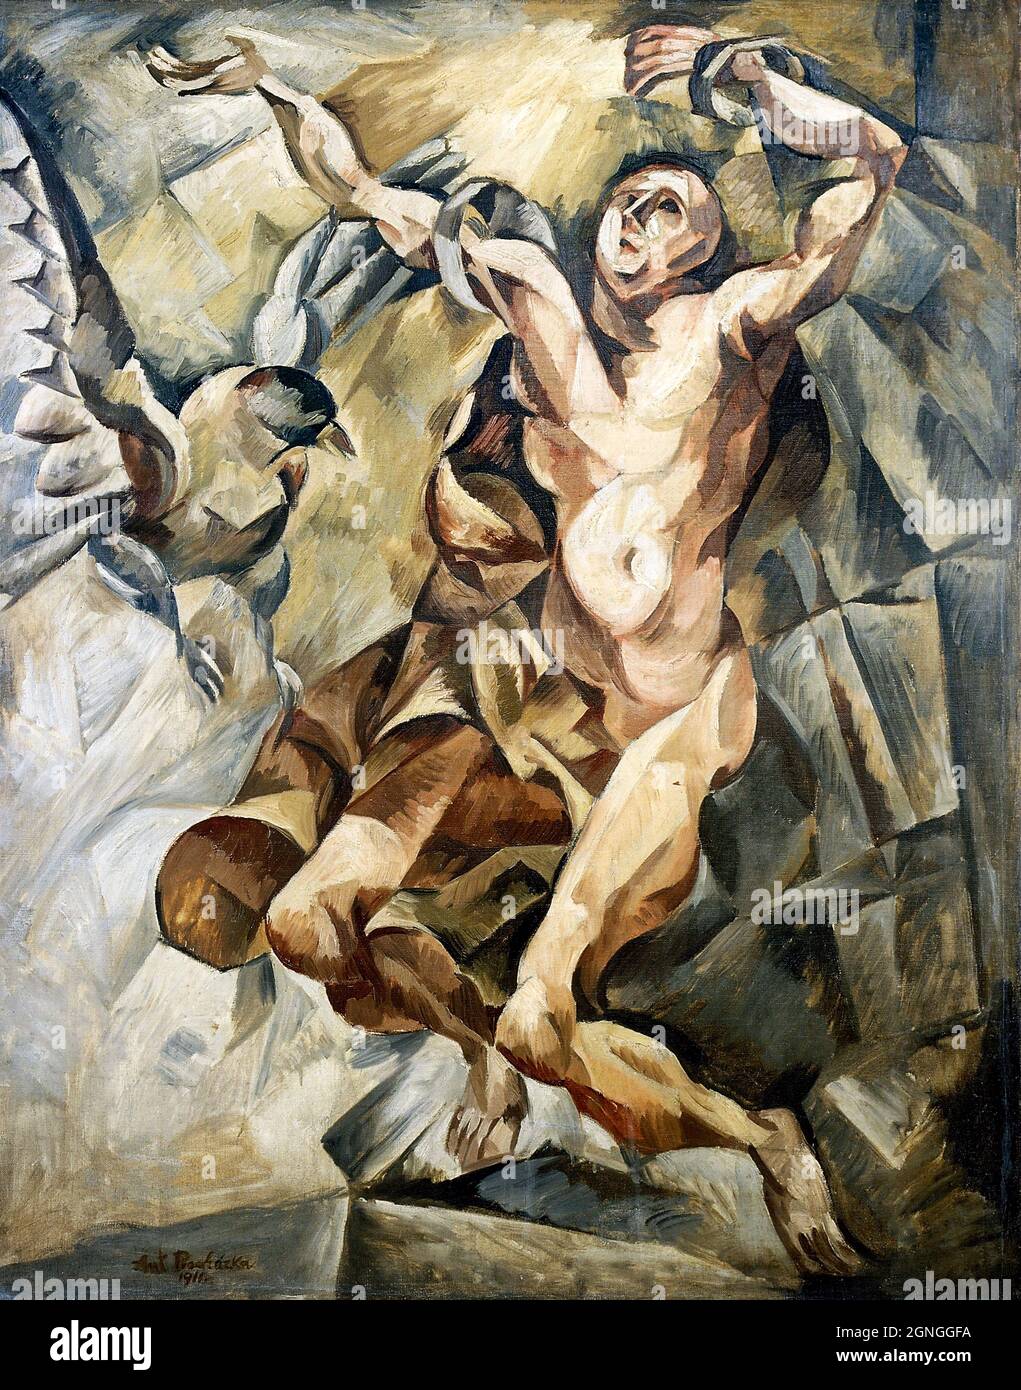 Prométhée par le peintre moderniste tchèque Antonín Procházka (1882-1945), 1911 Banque D'Images